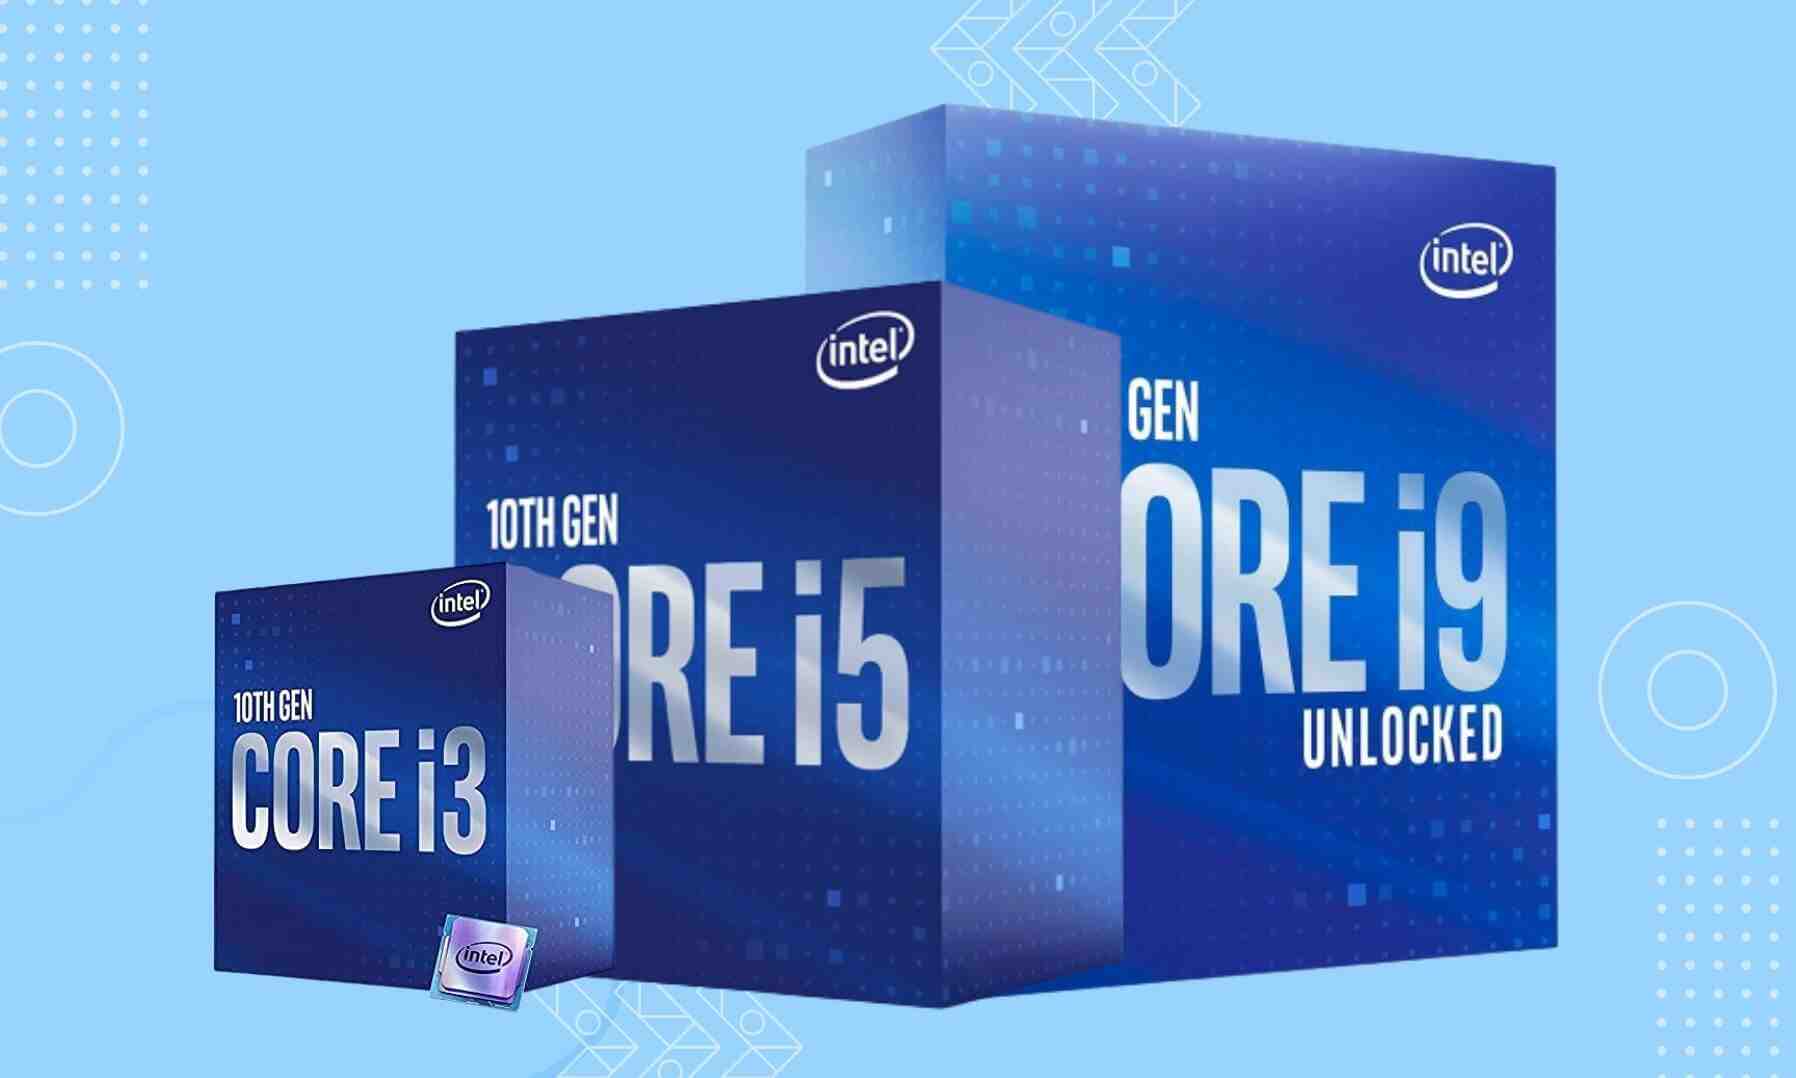 Is Intel 10th Gen Worth it